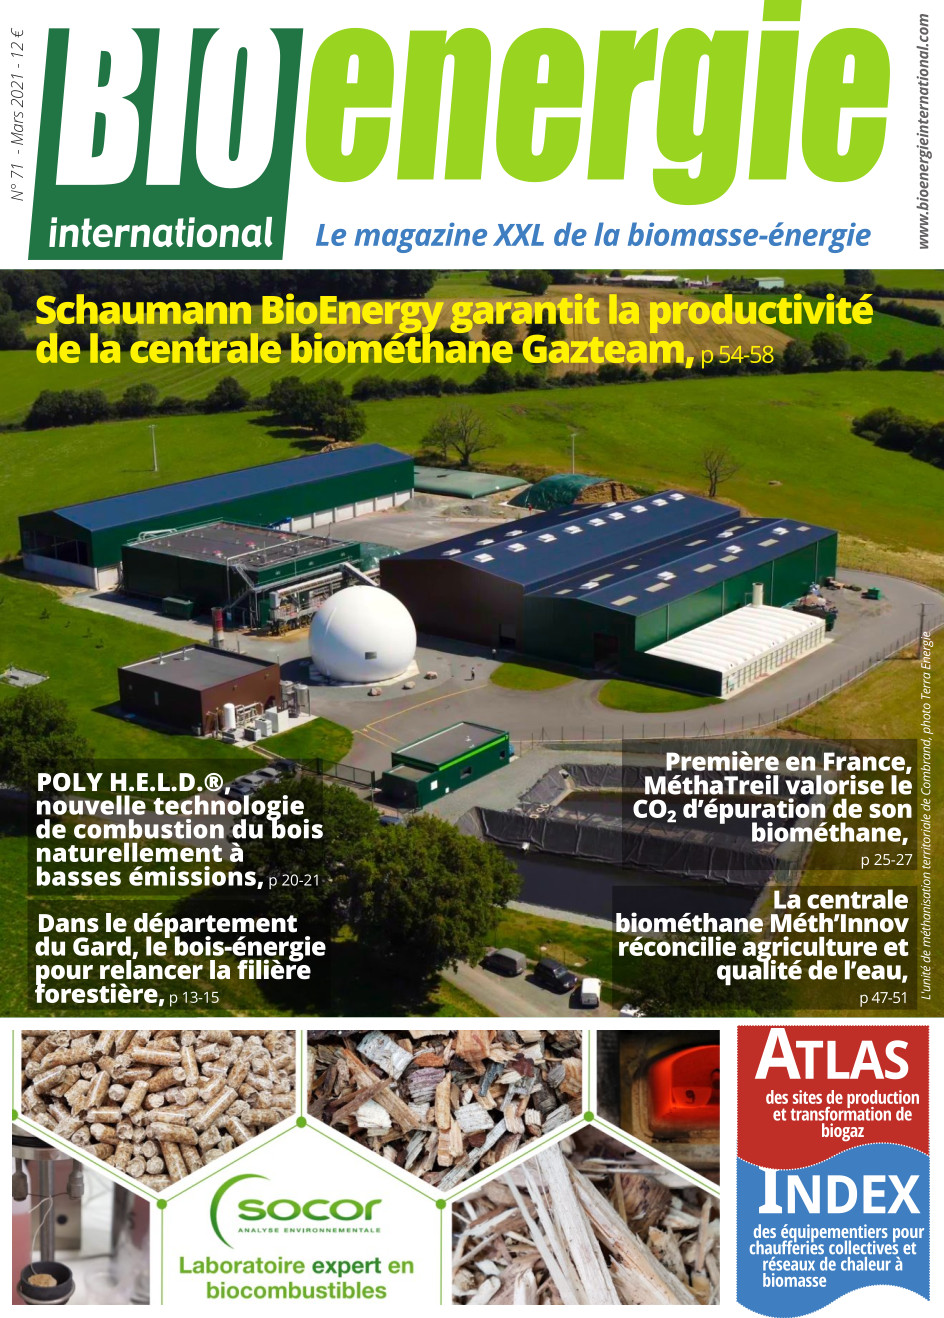 Bioénergie International n°71 – mars 2021